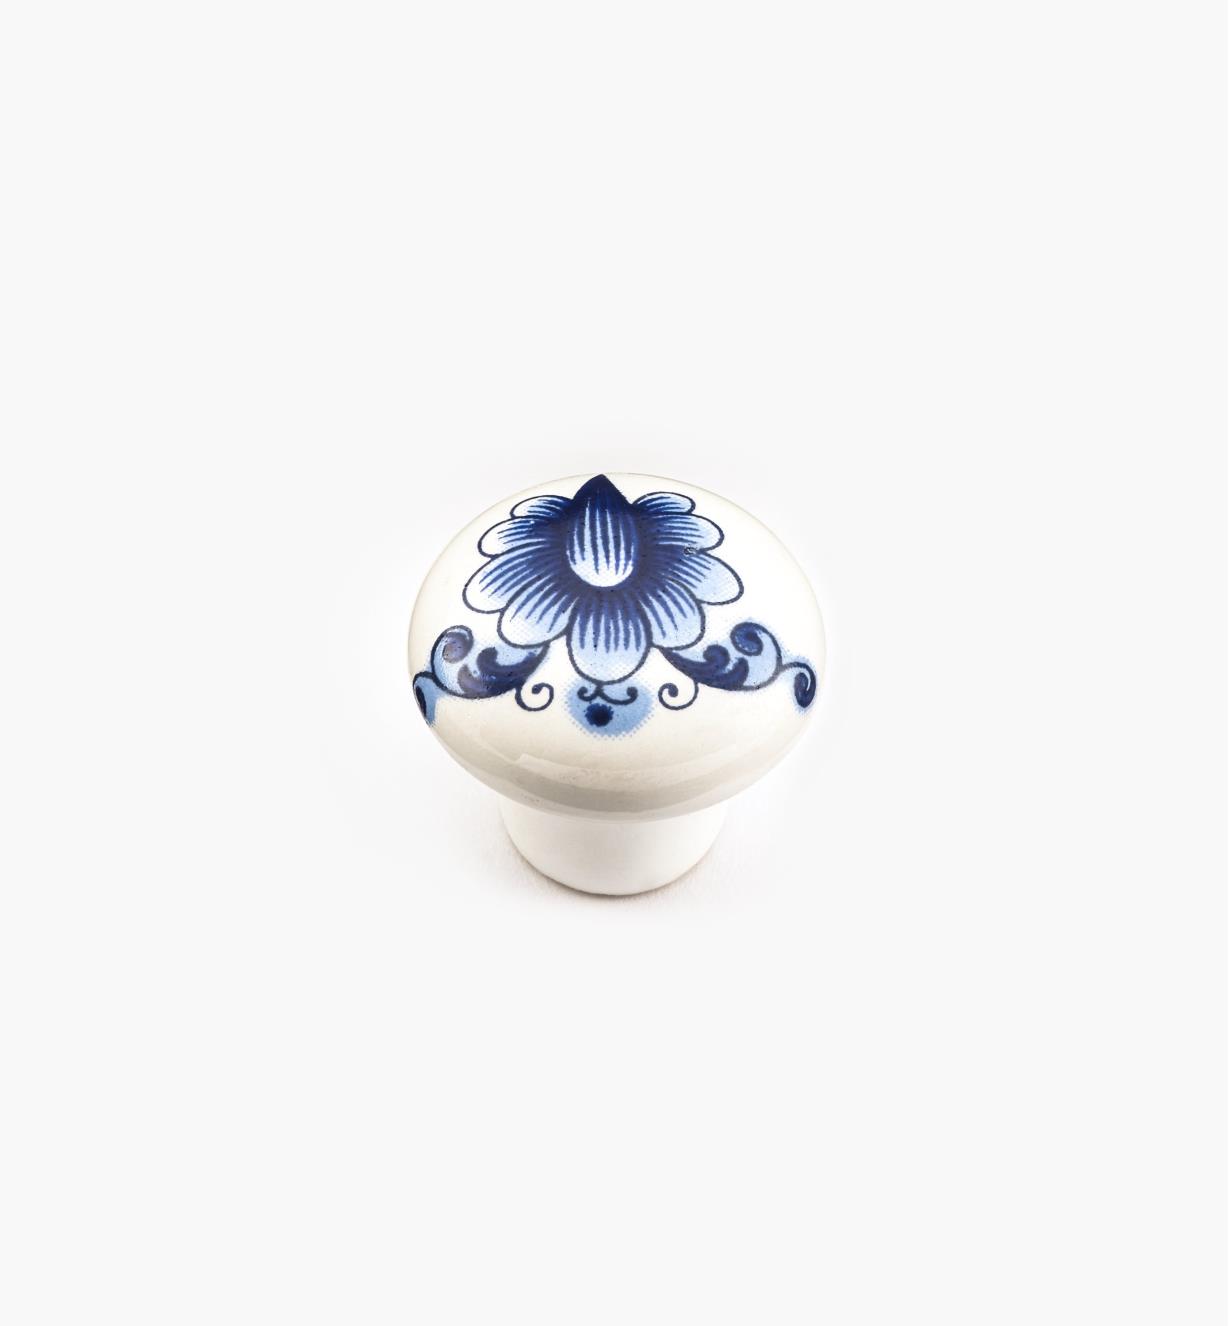 00W7102 - 1" x  3/4" Blue Ceramic Knob